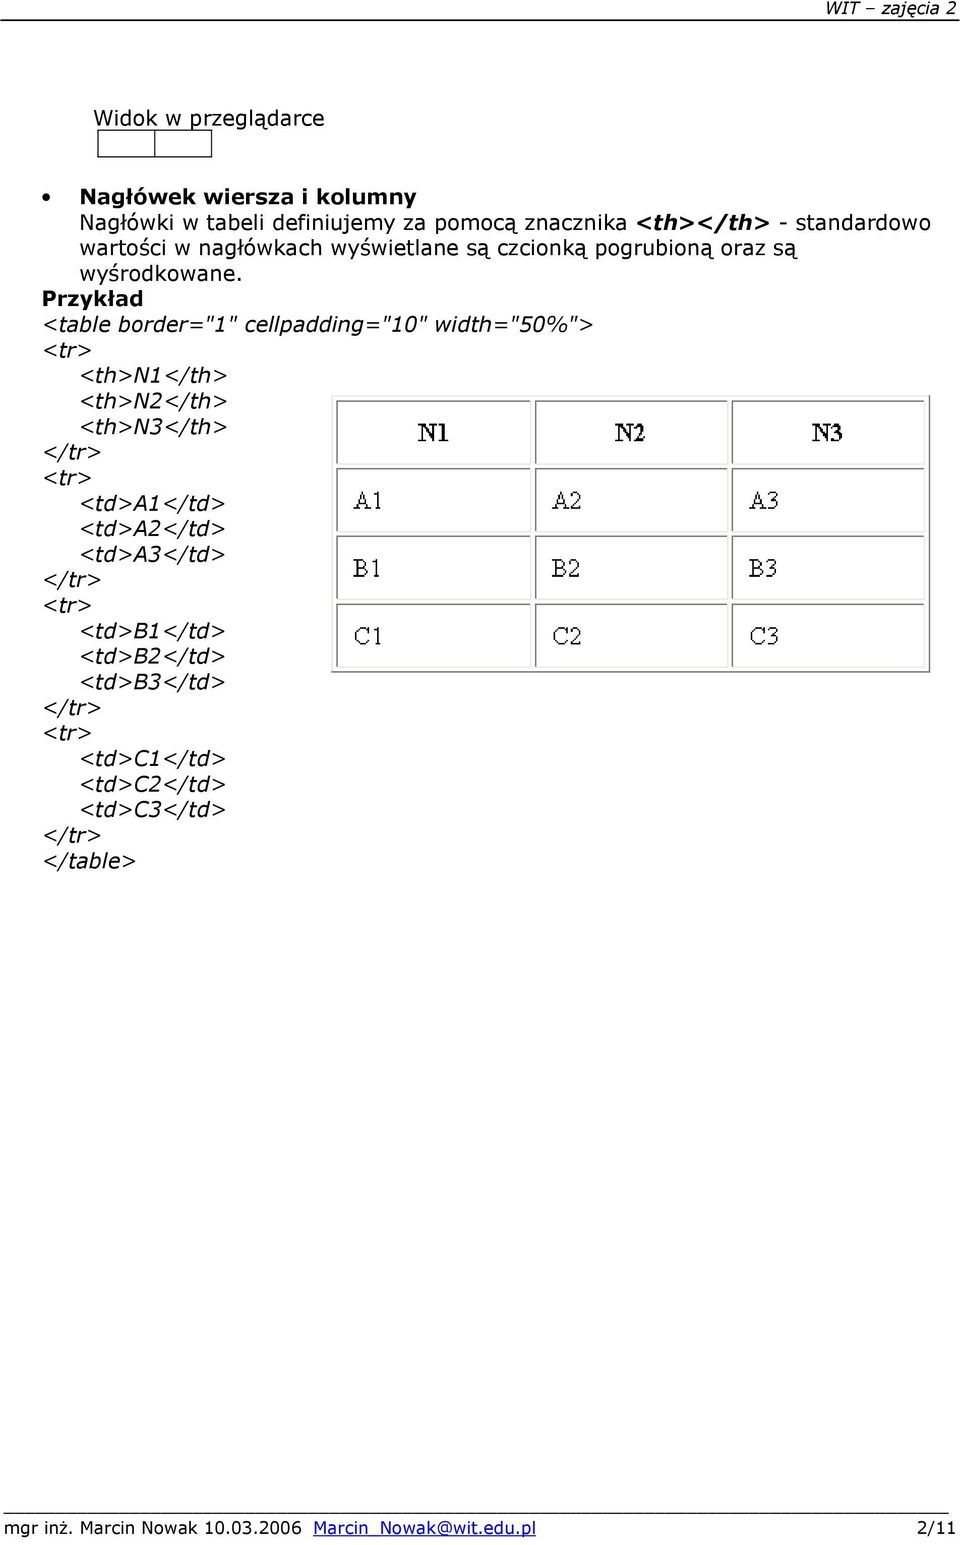 Przykład <table brder="1" cellpadding="10" width="50%"> <th>n1</th> <th>n2</th> <th>n3</th> <td>a1</td>